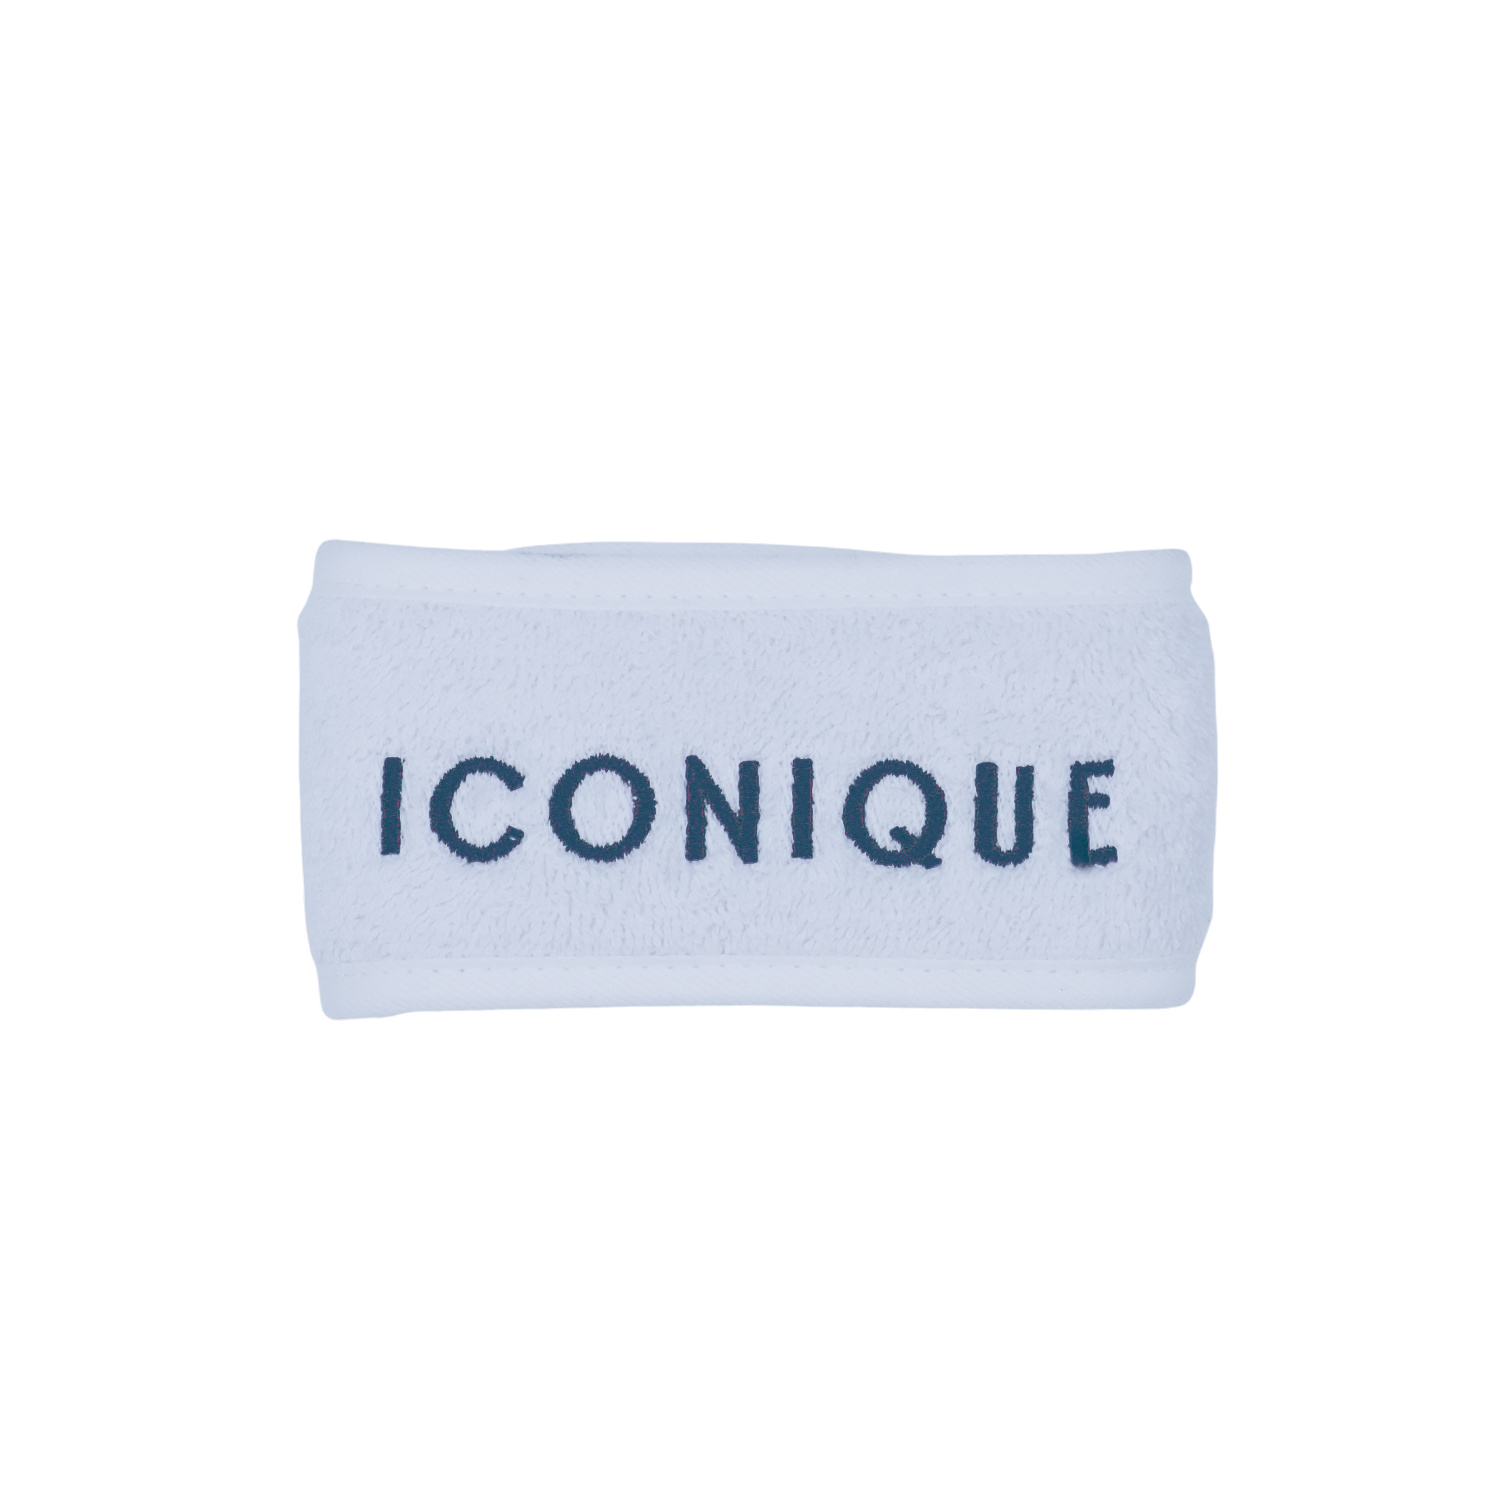 iconiquecosmetici.it fascia beauty routine iconique1